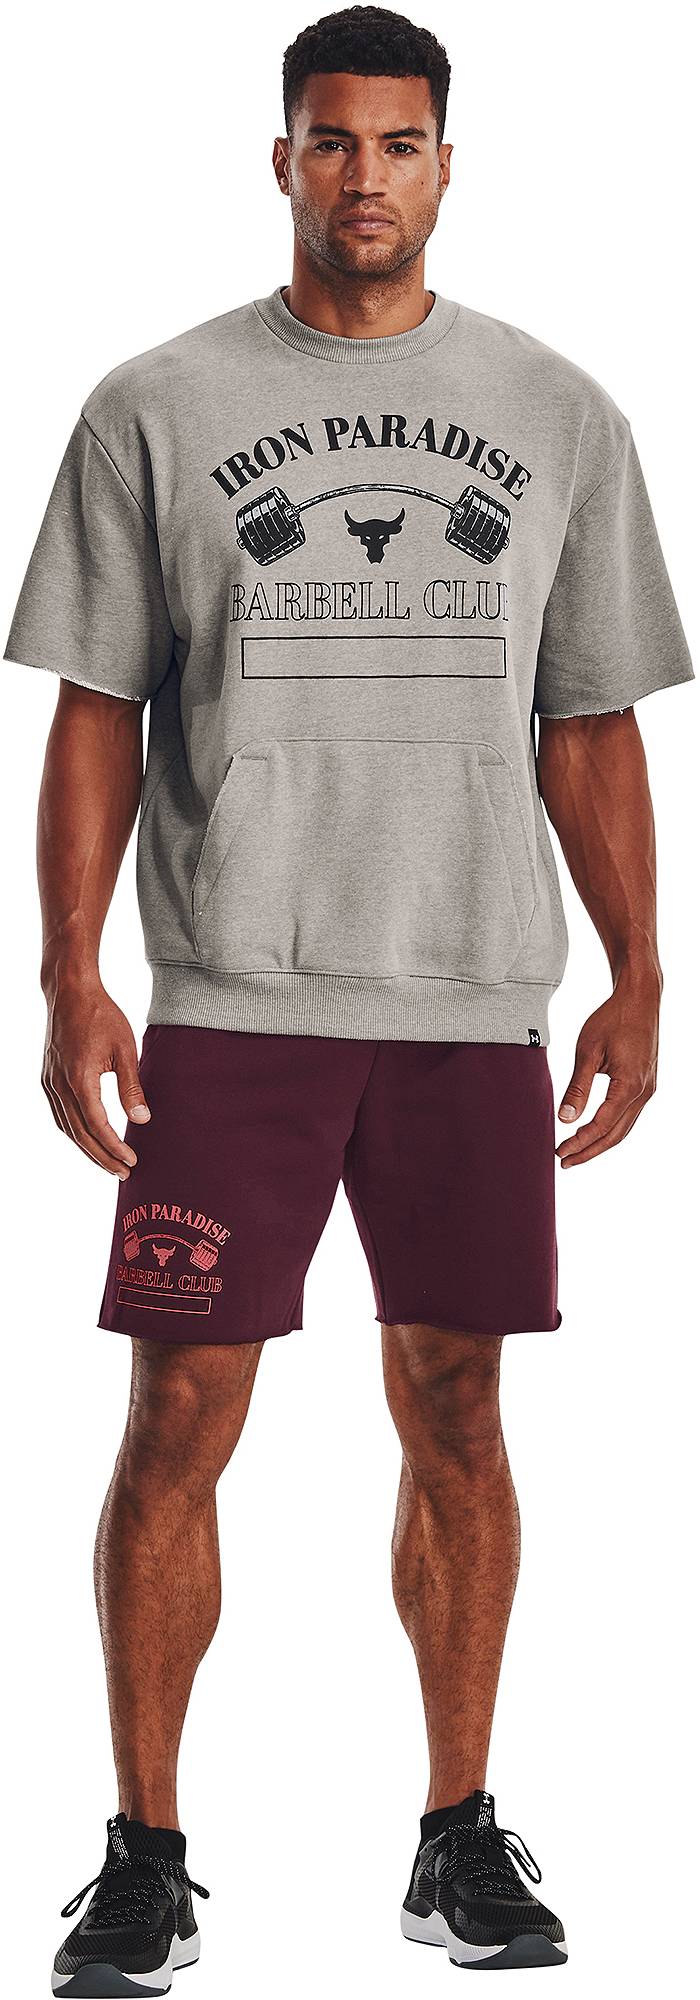 Men's Project Rock Heavyweight Terry T-Shirt